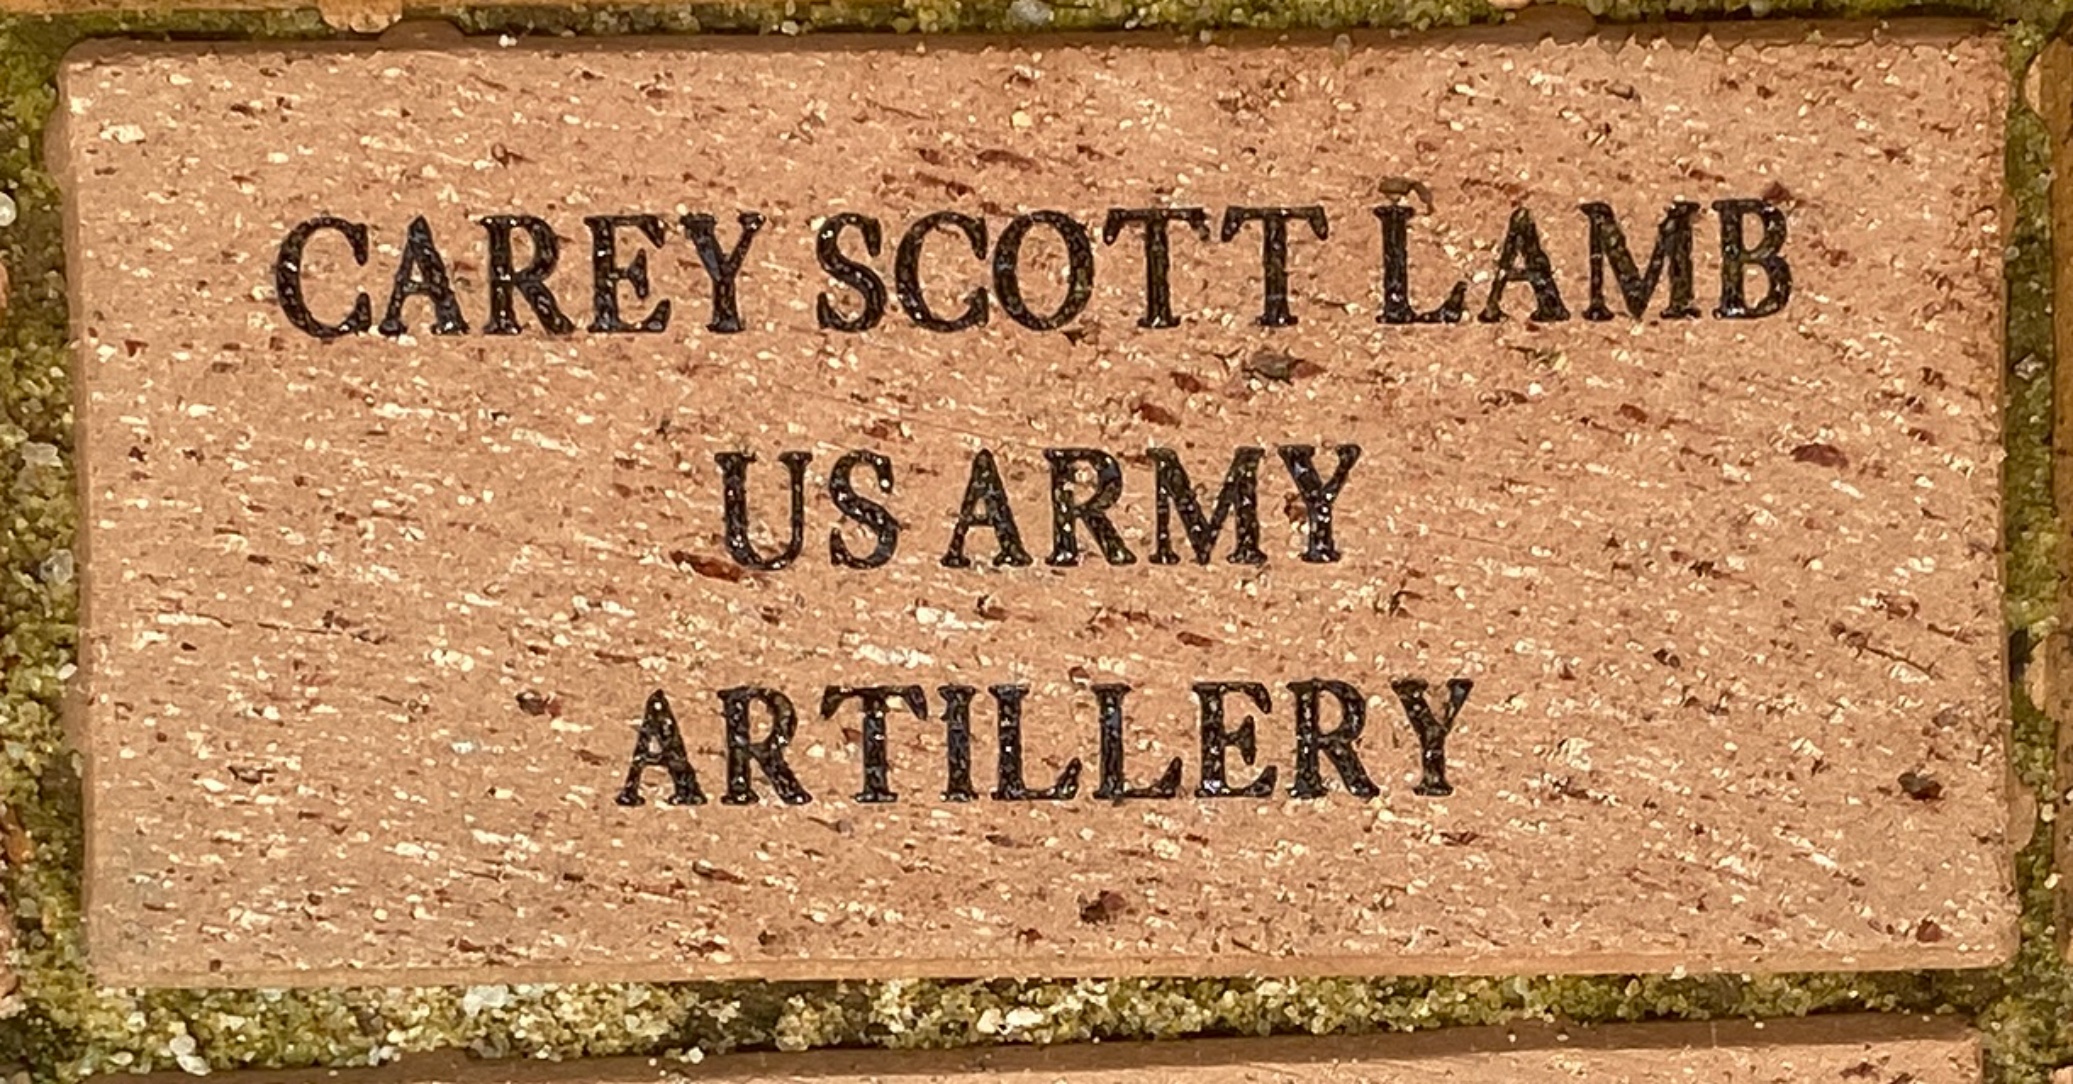 CAREY SCOTT LAMB US ARMY ARTILLERY